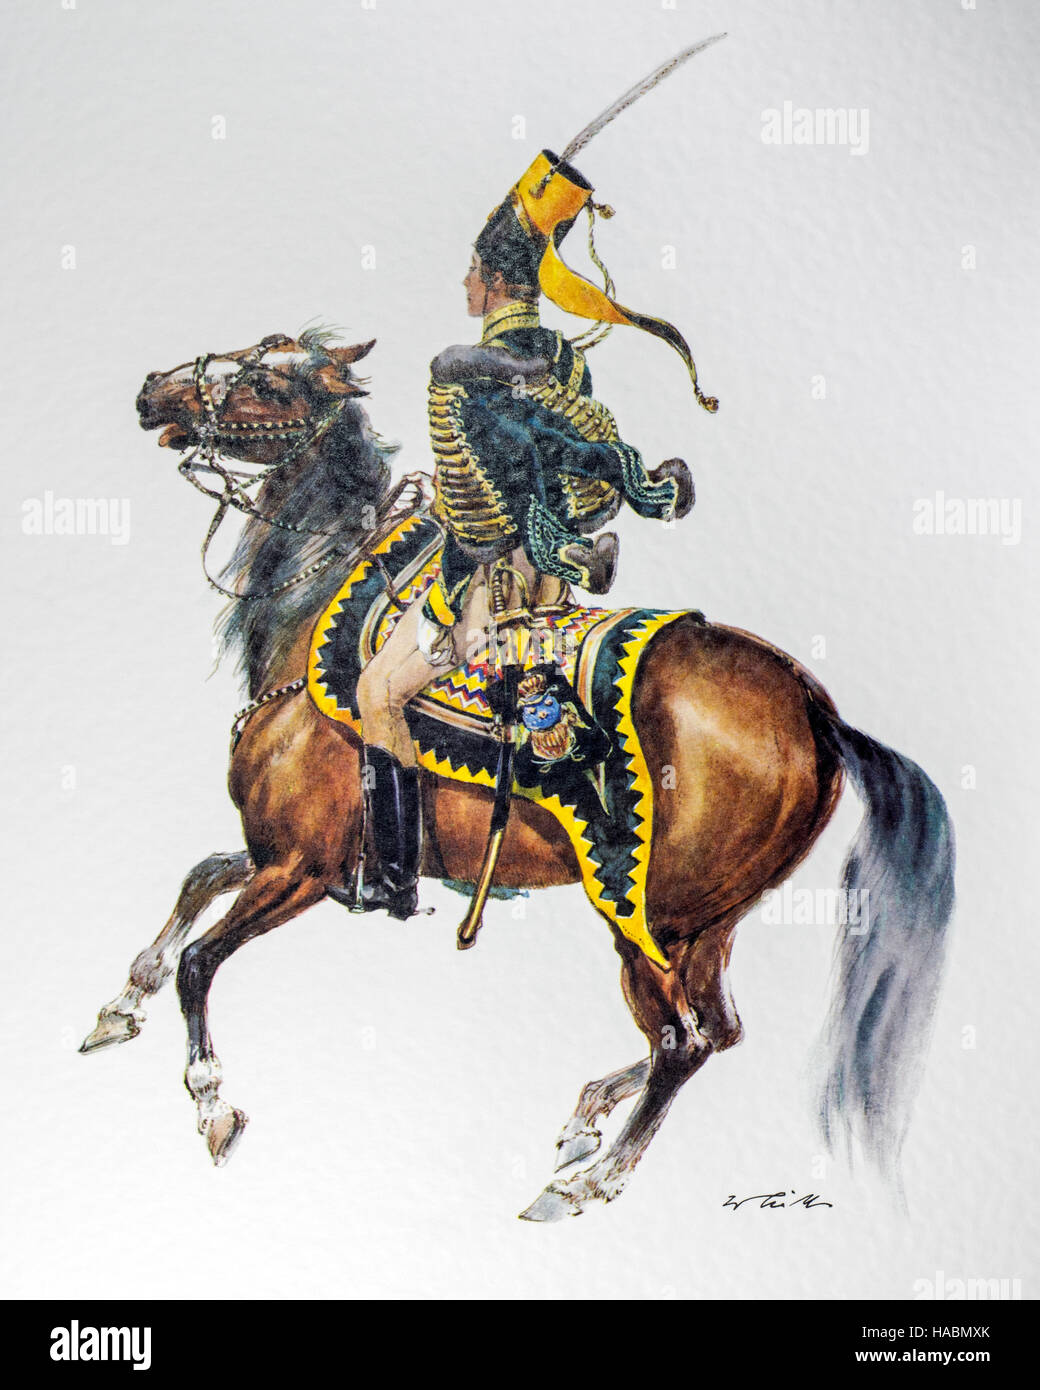 Officier suédois à cheval en uniforme du régiment de hussards 1837 'Kronprinz' Banque D'Images